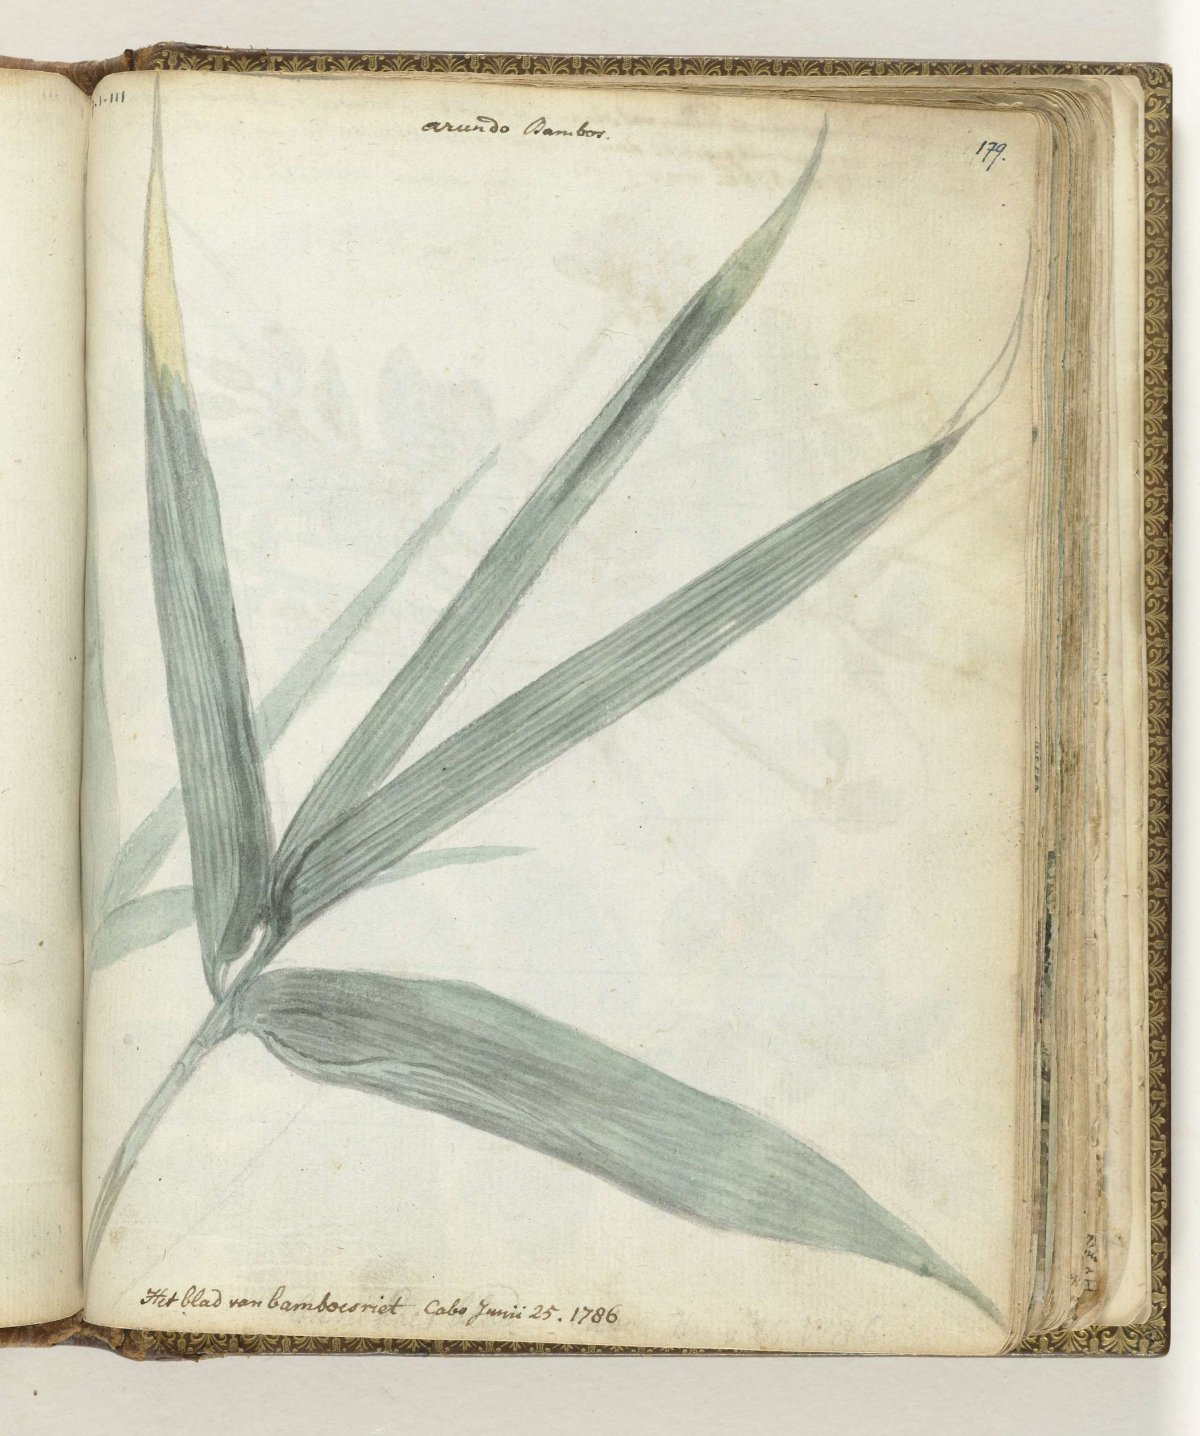 The leaf of bamboo reeds, Jan Brandes, 1786